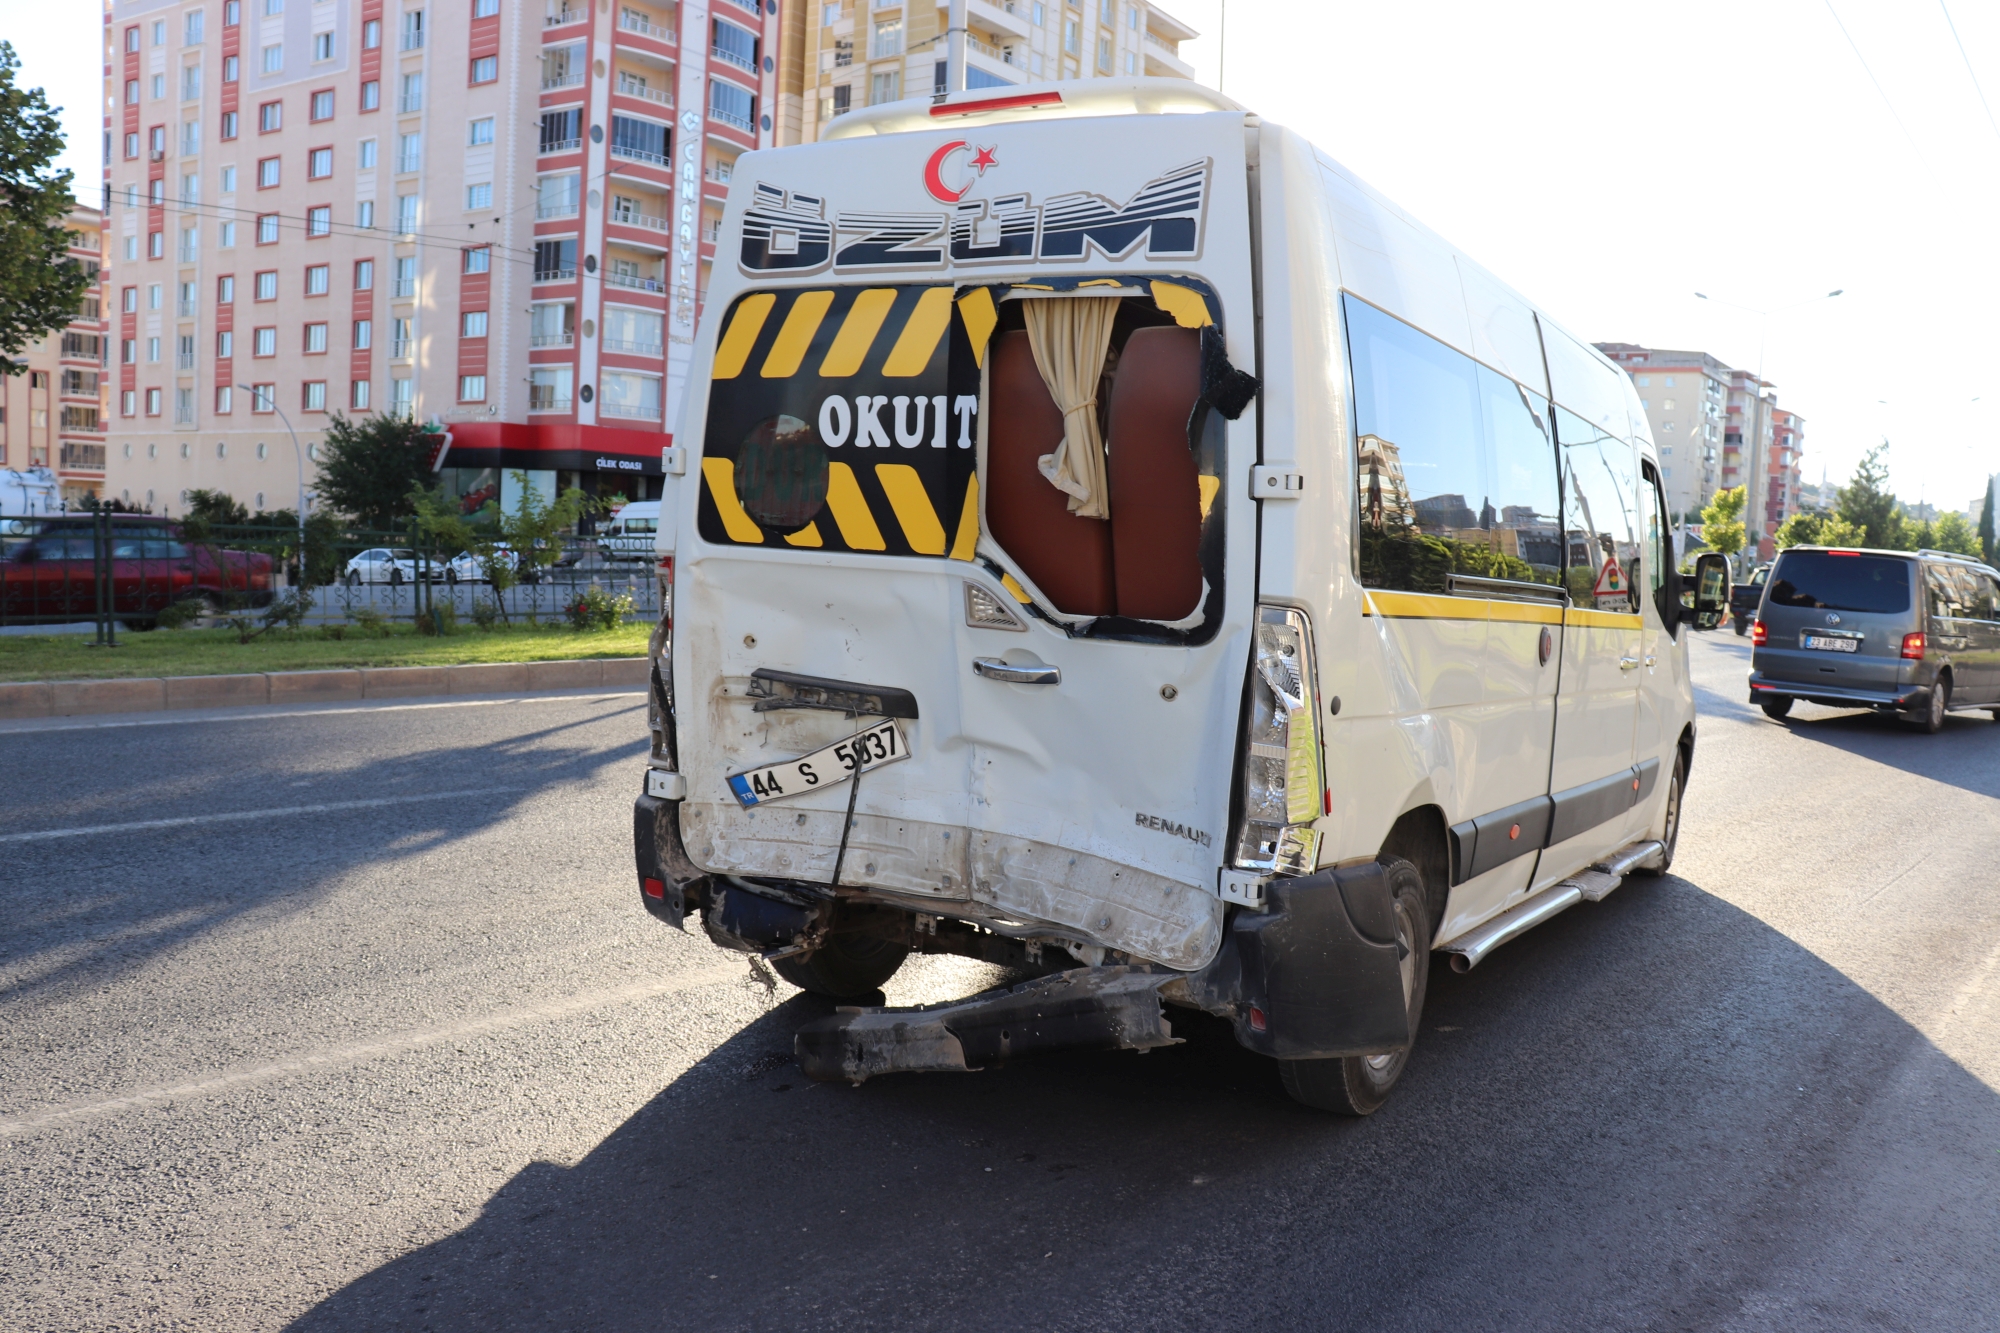 Malatya’da otomobilin aynı istikamette seyreden minibüse arkadan çarpması sonucunda otomobil sürücüsü hayatını kaybederken, yanında bulunan 1 kişi ise yaralandı.